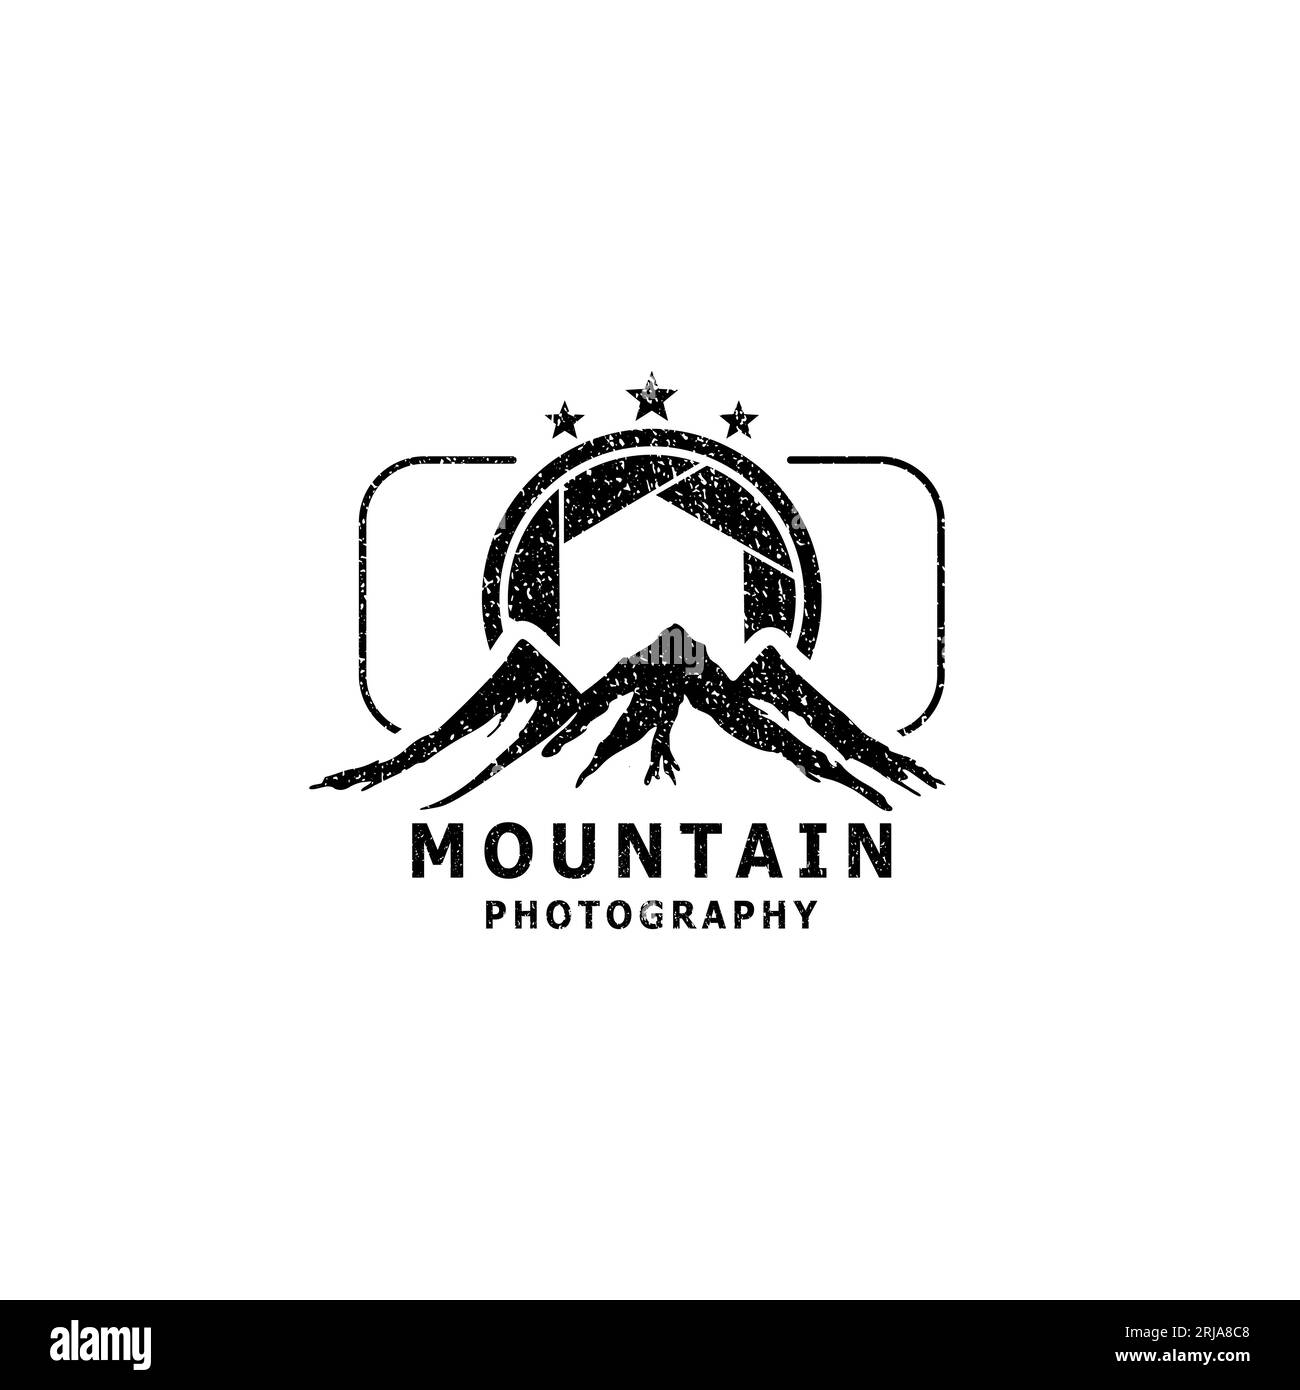 Paesaggi montani e obiettivi per fotocamere, per attività all'aperto o fotografie con logo Illustrazione Vettoriale